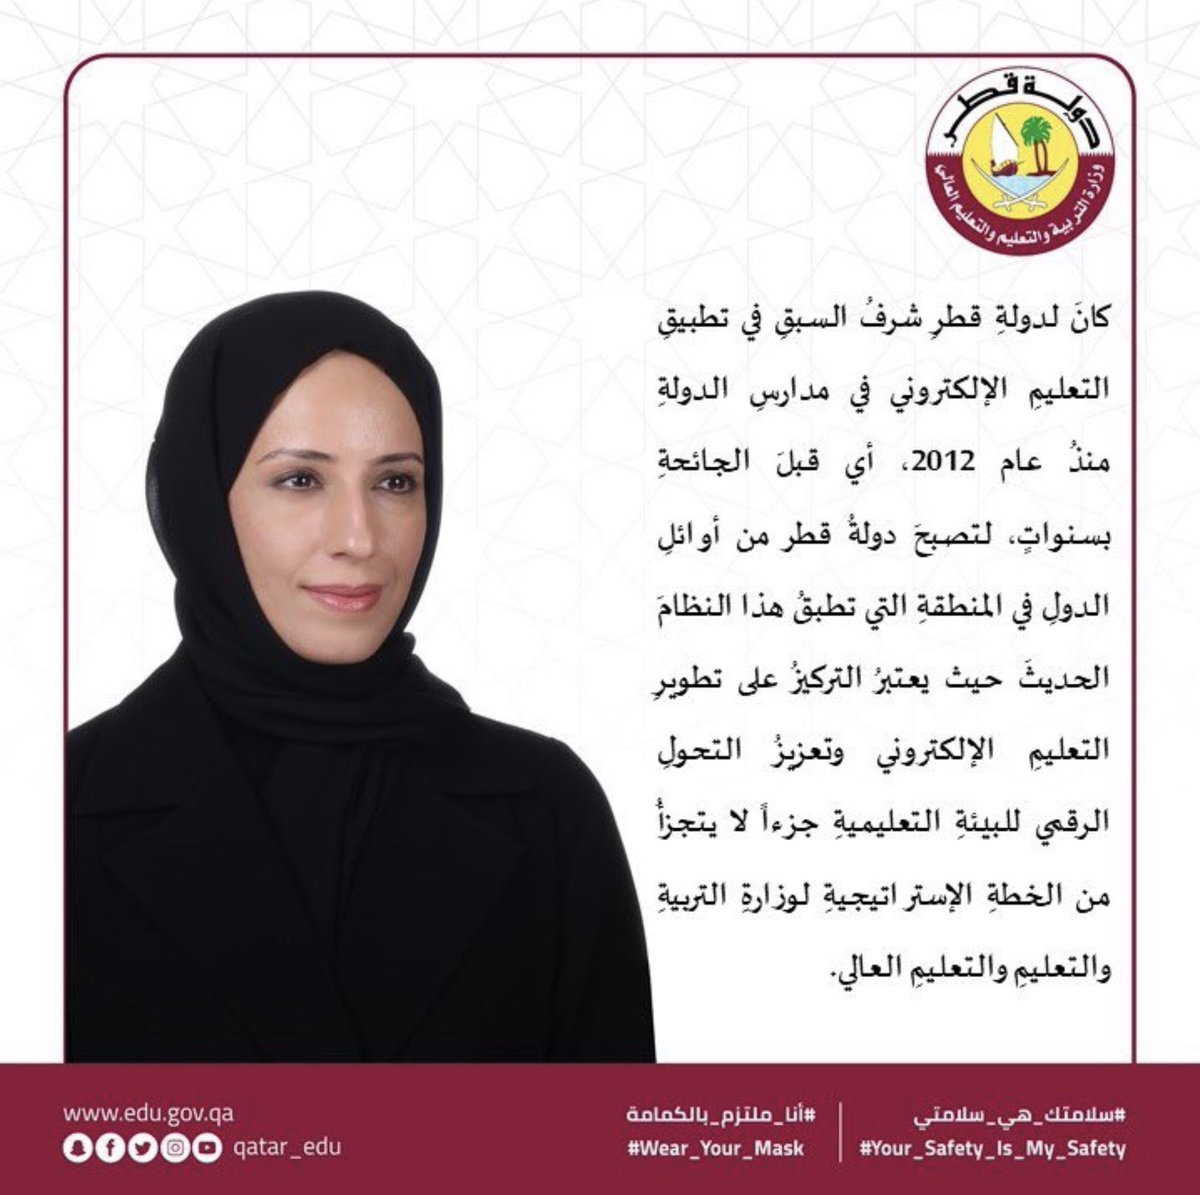 وزارة التربية والتعليم قطر